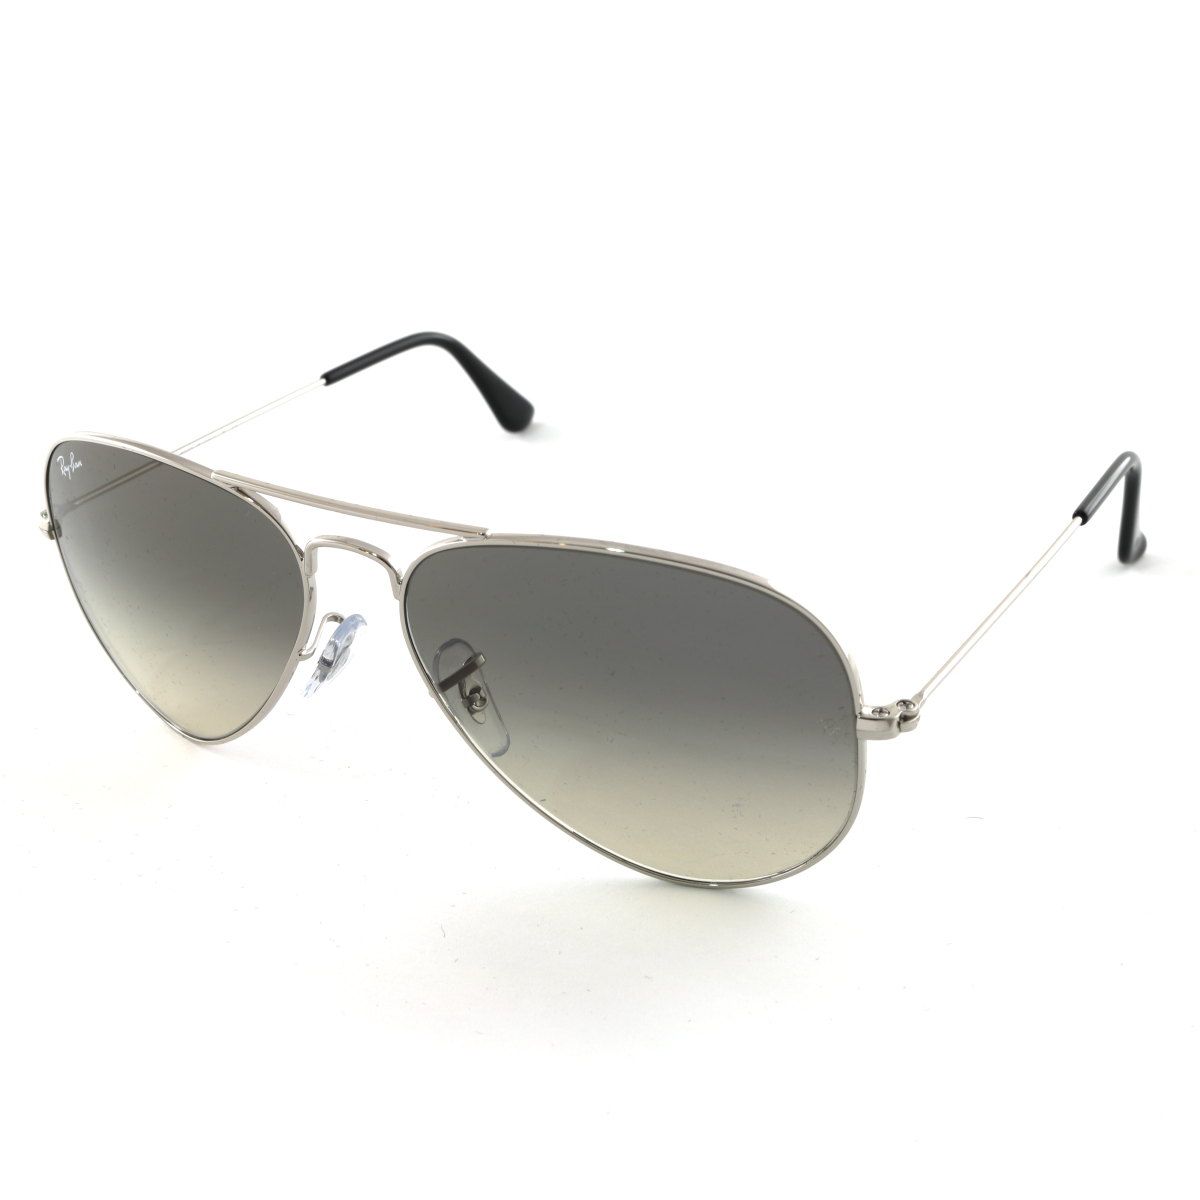 Aviator Sunglasses RB3025 003 32 - size 58